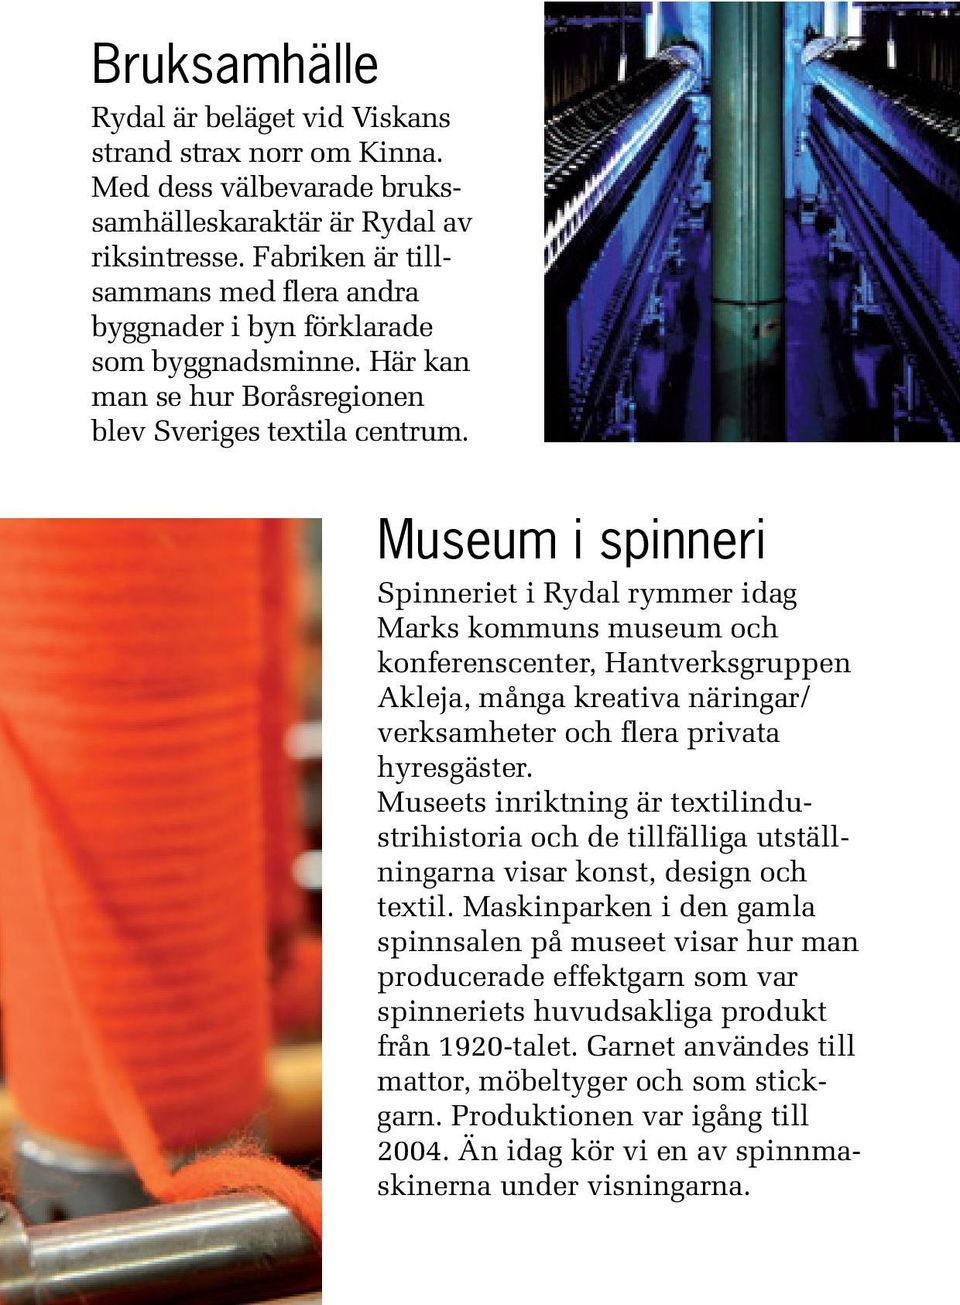 Museum i spinneri Spinneriet i Rydal rymmer idag Marks kommuns museum och konferenscenter, Hantverksgruppen Akleja, många kreativa näringar/ verksamheter och flera privata hyresgäster.